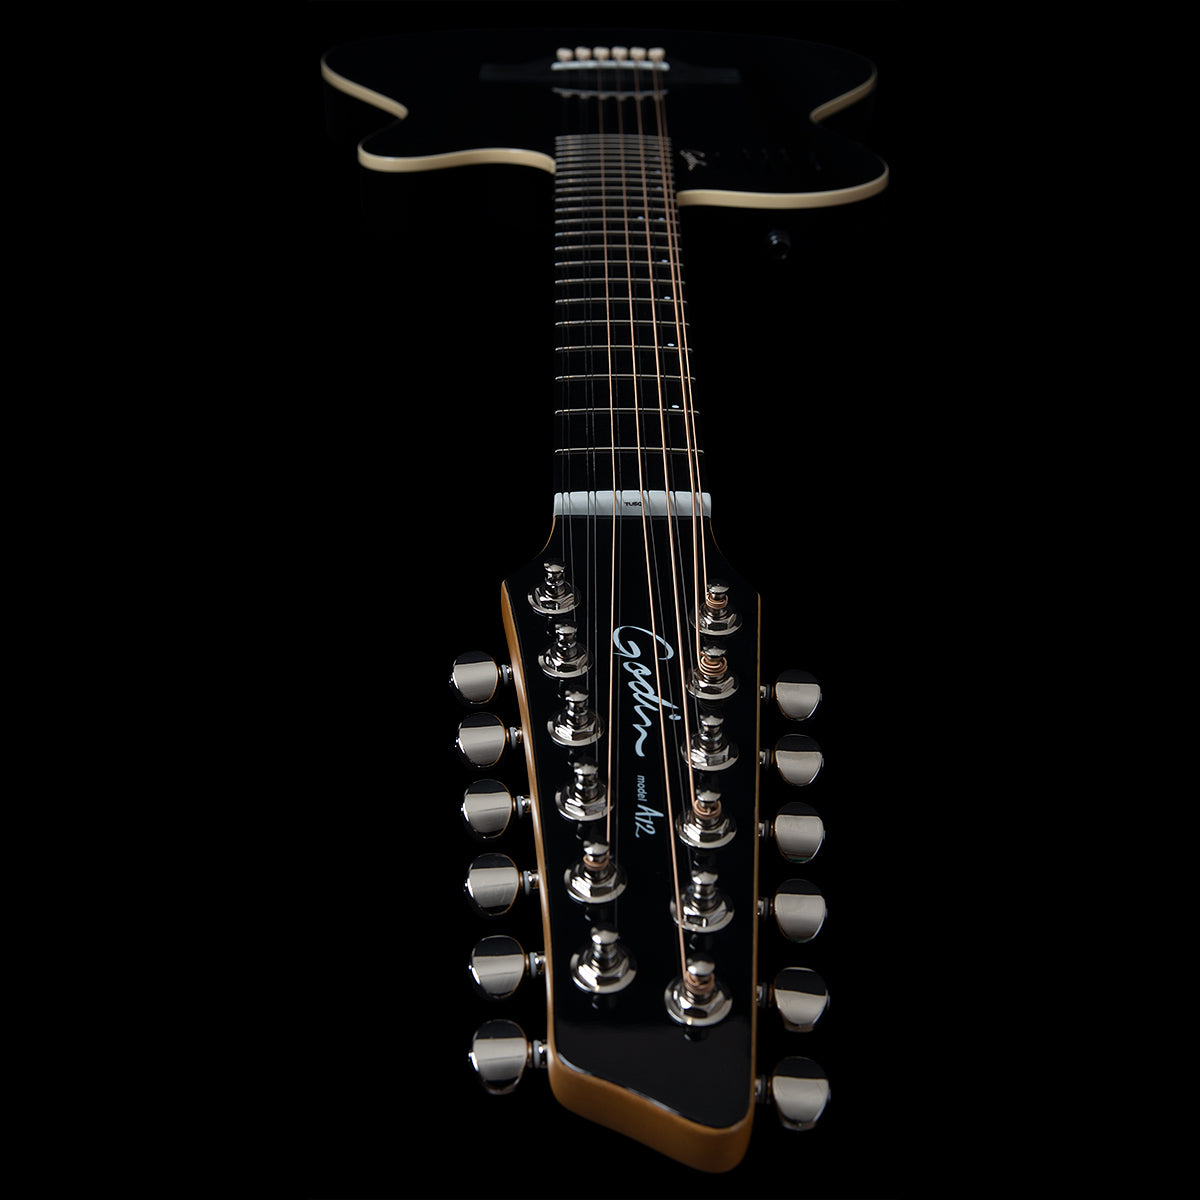 Đàn guitar Godin A12 màu đen HG 048588 là một sản phẩm chất lượng và sang trọng, đem lại cho người chơi âm nhạc sự thoải mái và trải nghiệm thú vị. Với thiết kế đẹp mắt và âm thanh truyền tải tốt, sản phẩm này không chỉ làm cho người chơi tâm huyết mà còn làm cho người yêu nhạc muốn khám phá. Hãy cùng xem hình ảnh sản phẩm để hiểu thêm về độ chân thực và tuyệt vời của âm nhạc! 